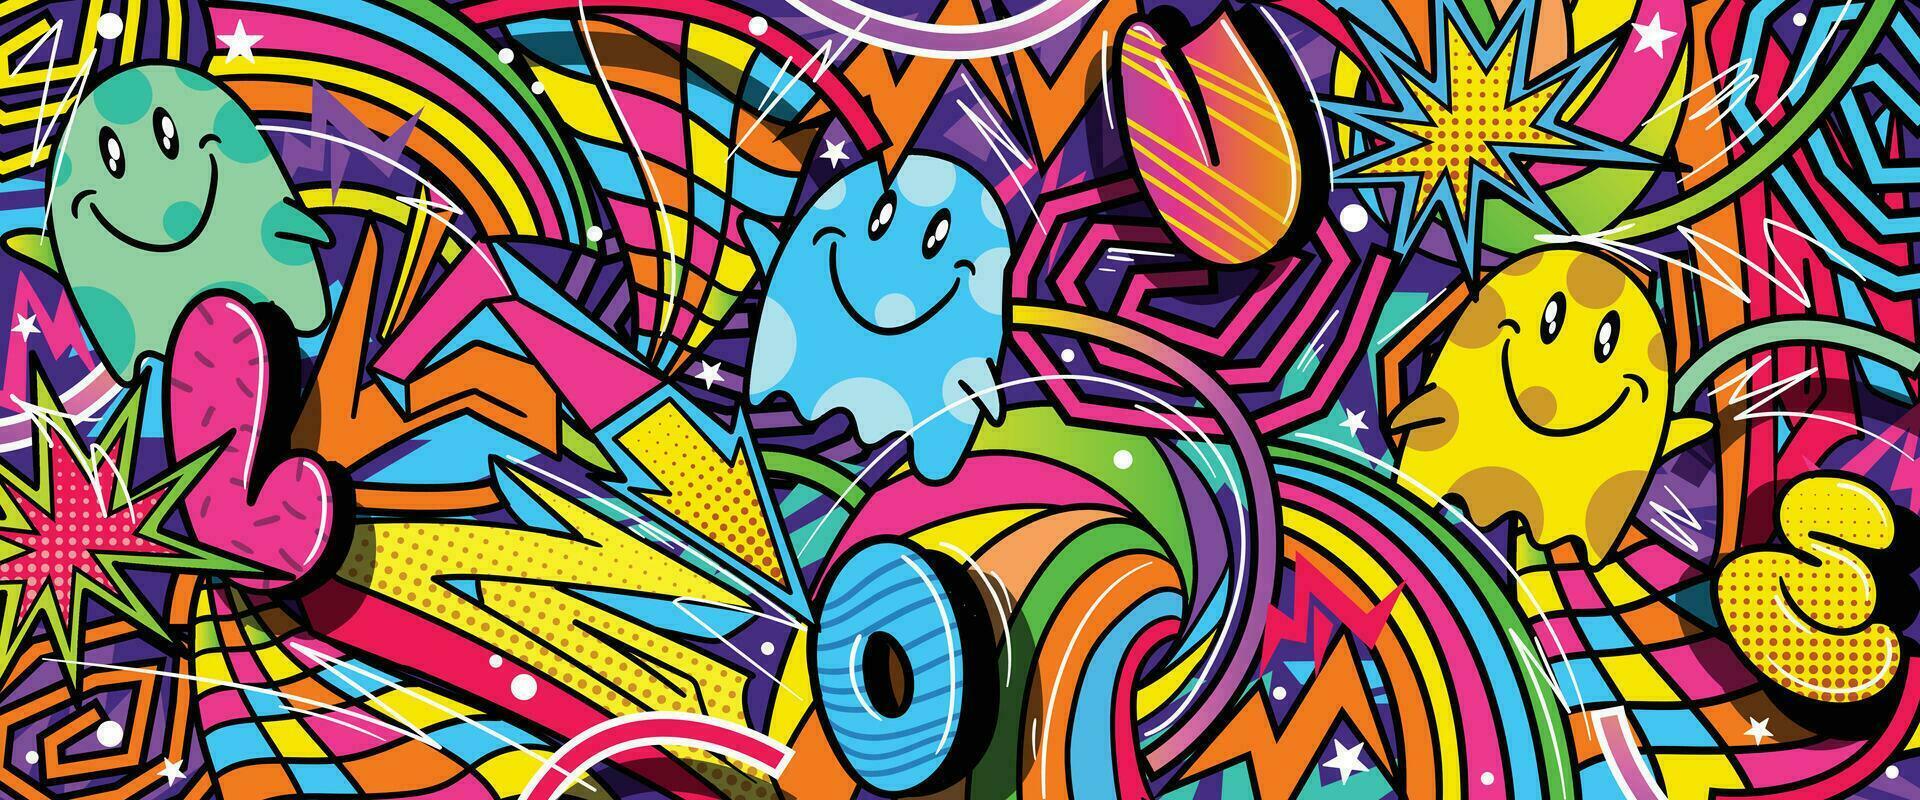 graffiti tekening kunst achtergrond met levendig kleuren hand getekend stijl. straat kunst graffiti stedelijk thema voor afdrukken, spandoeken, en textiel in vector formaat